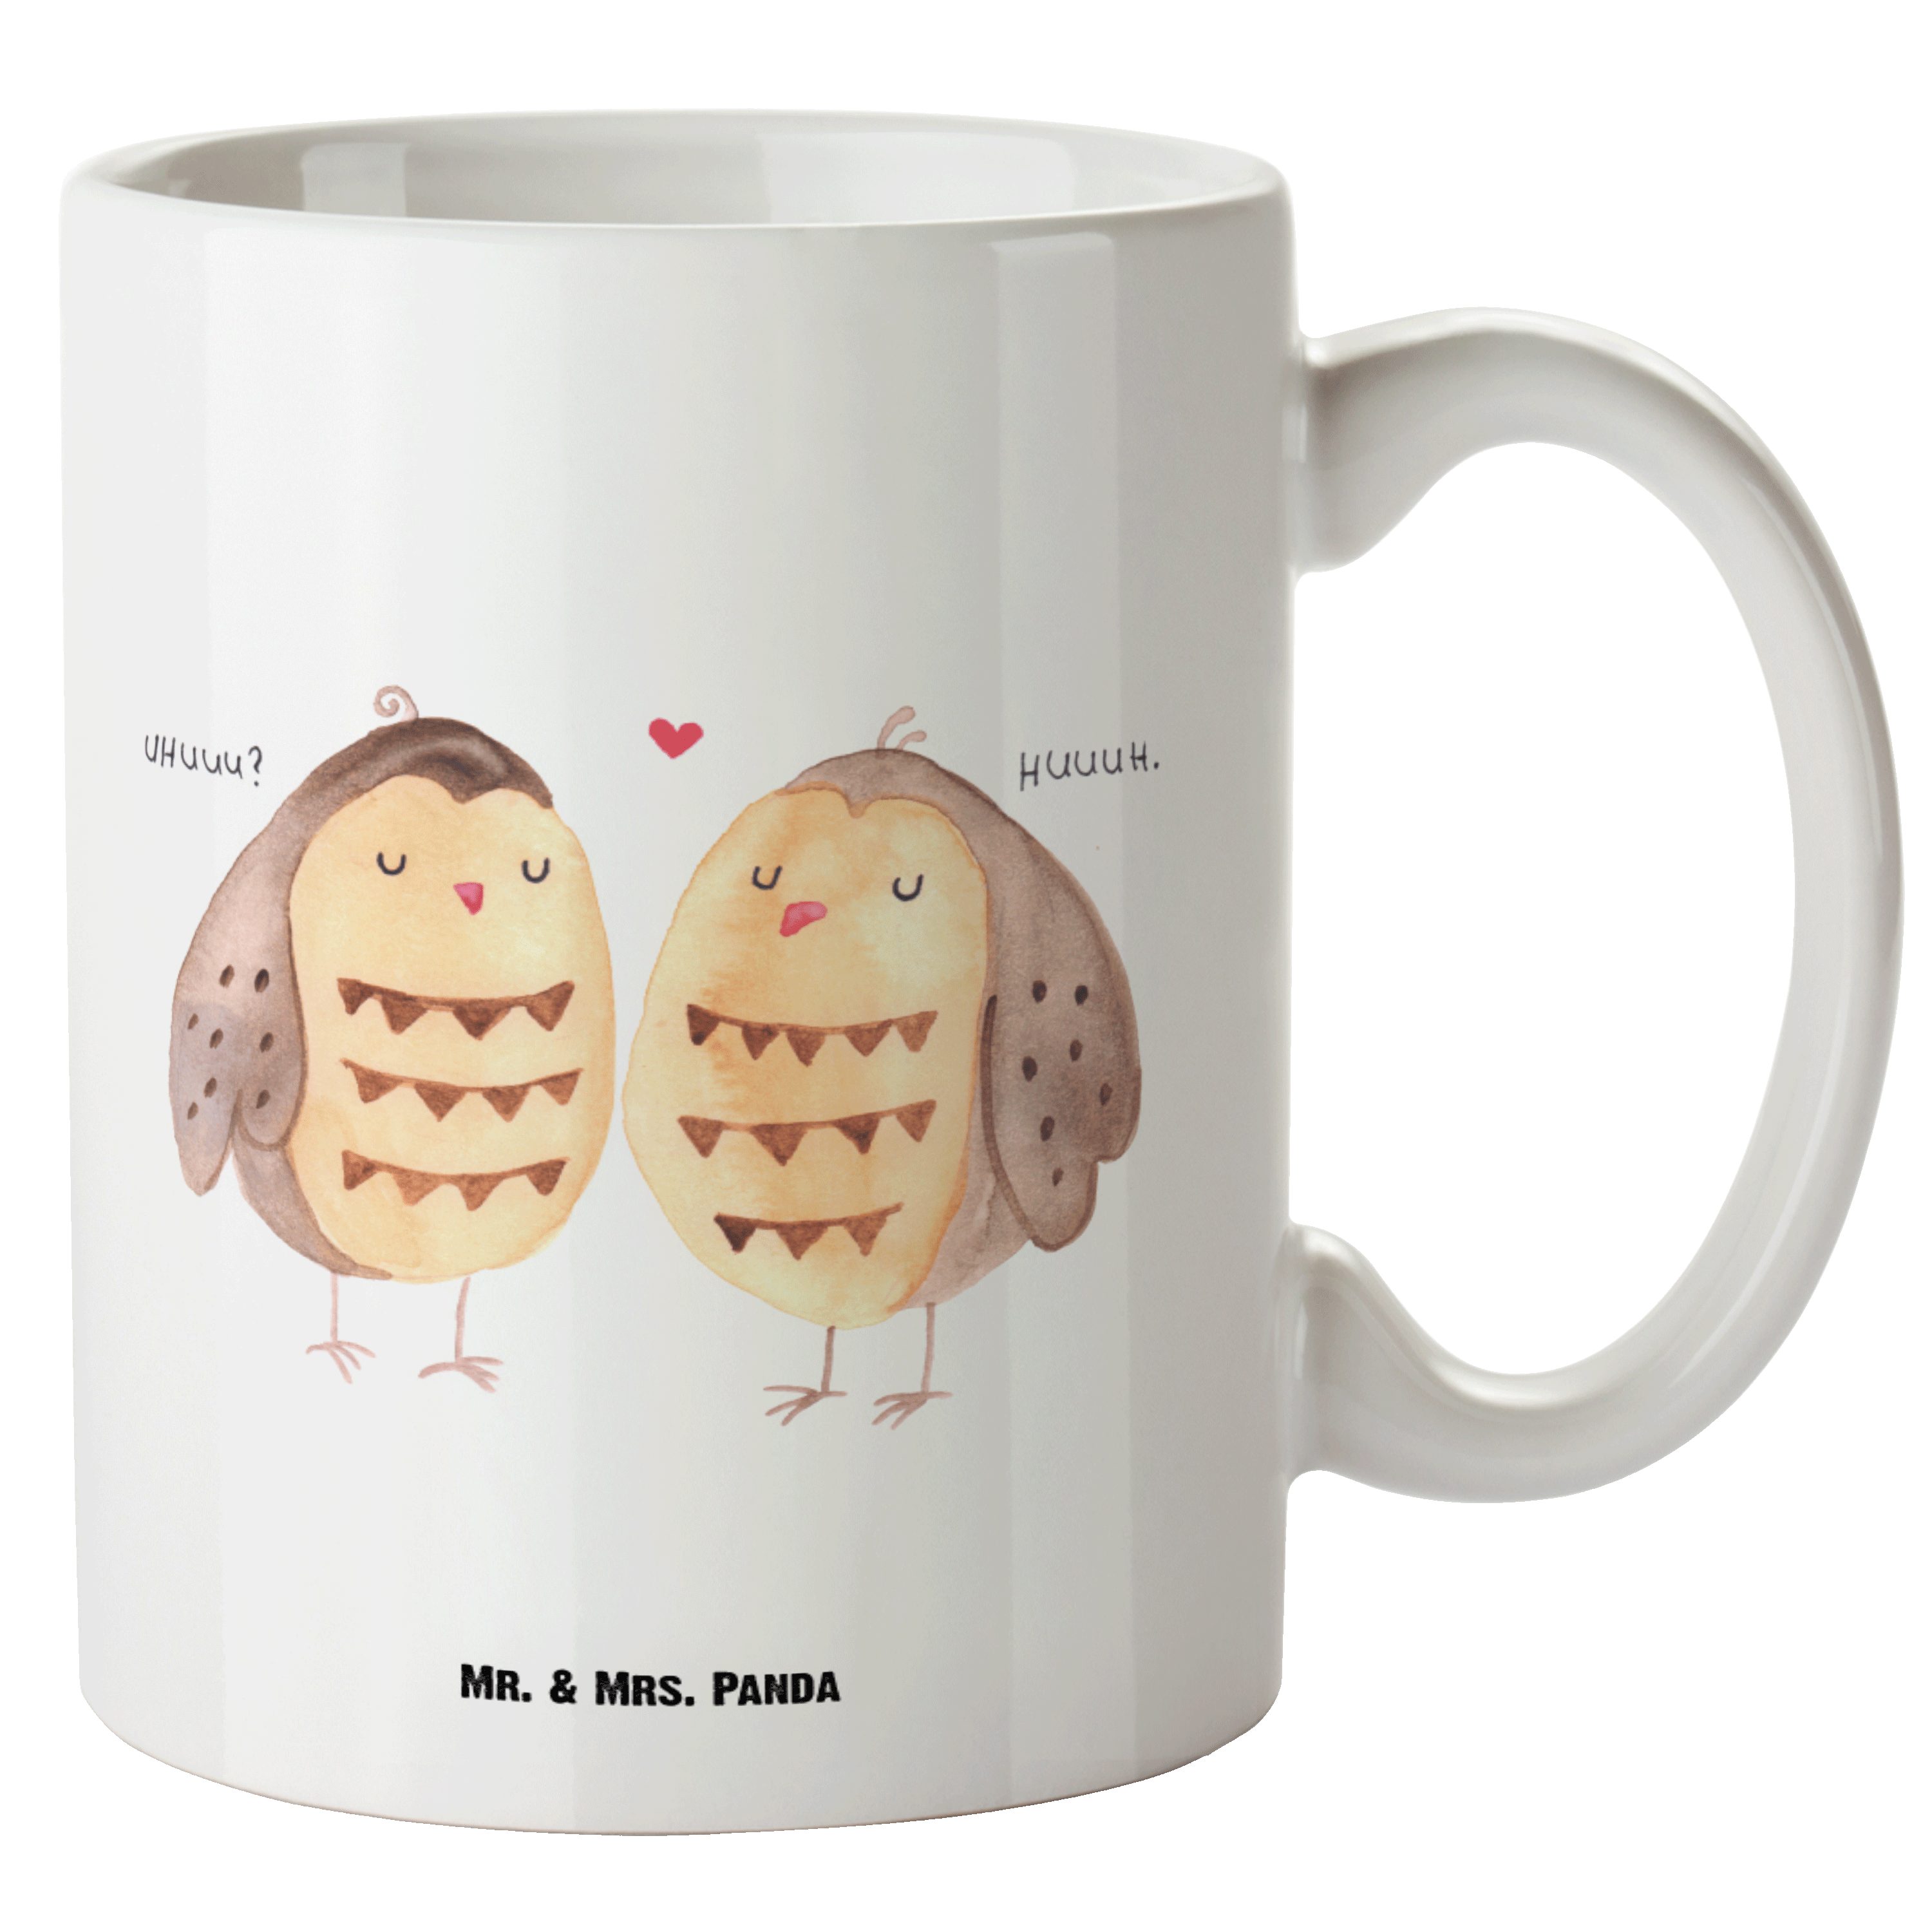 Mr. & Mrs. Panda Tasse Eule Liebe - Weiß - Geschenk, Wortspiel lustig, Liebesgeschenk, spülm, XL Tasse Keramik